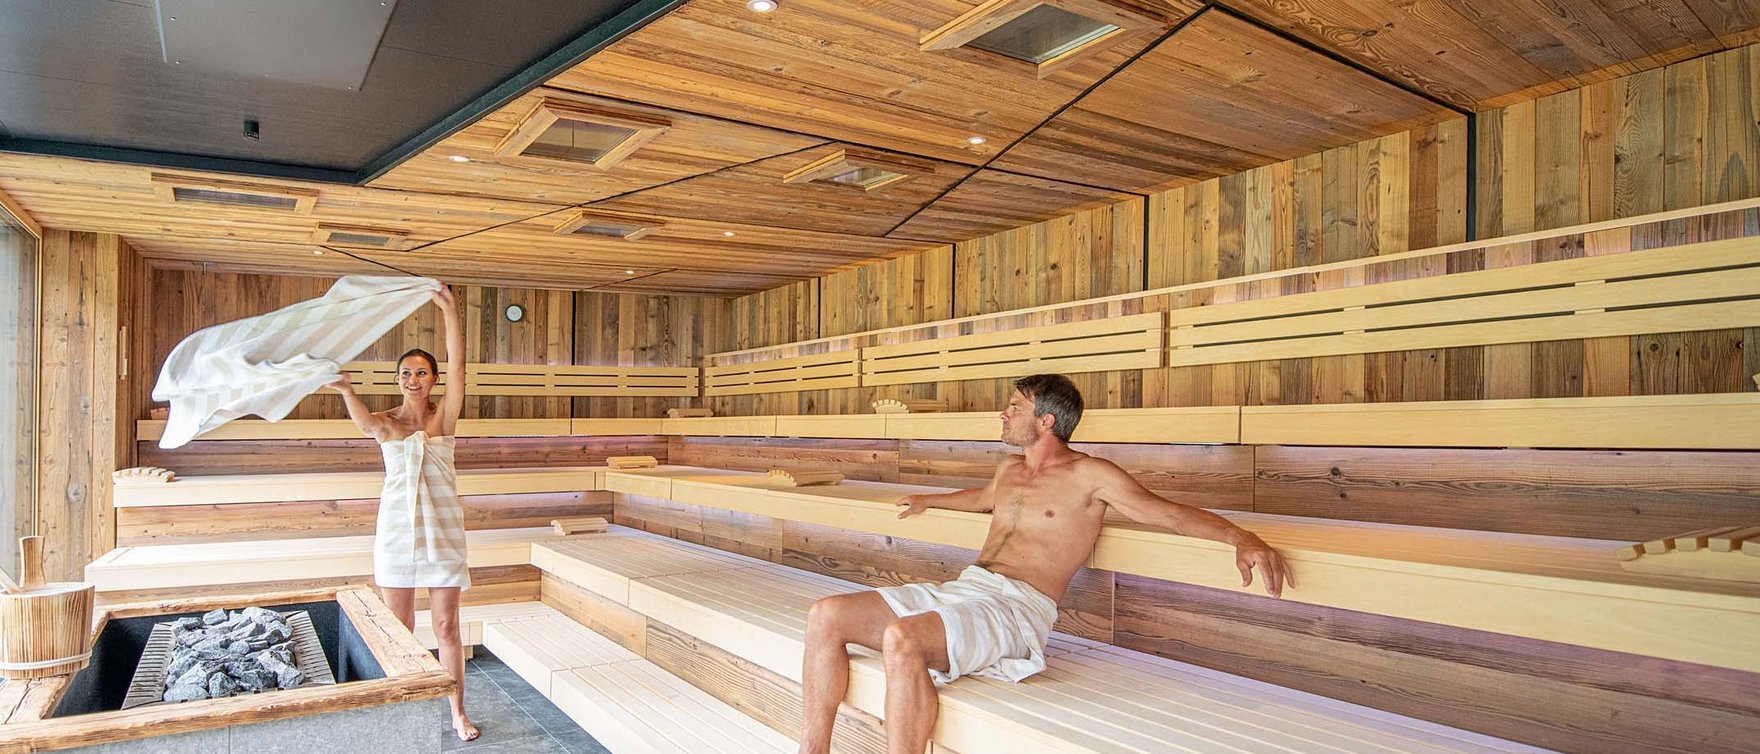 Sauna für zwei: romantische Stunden garantiert